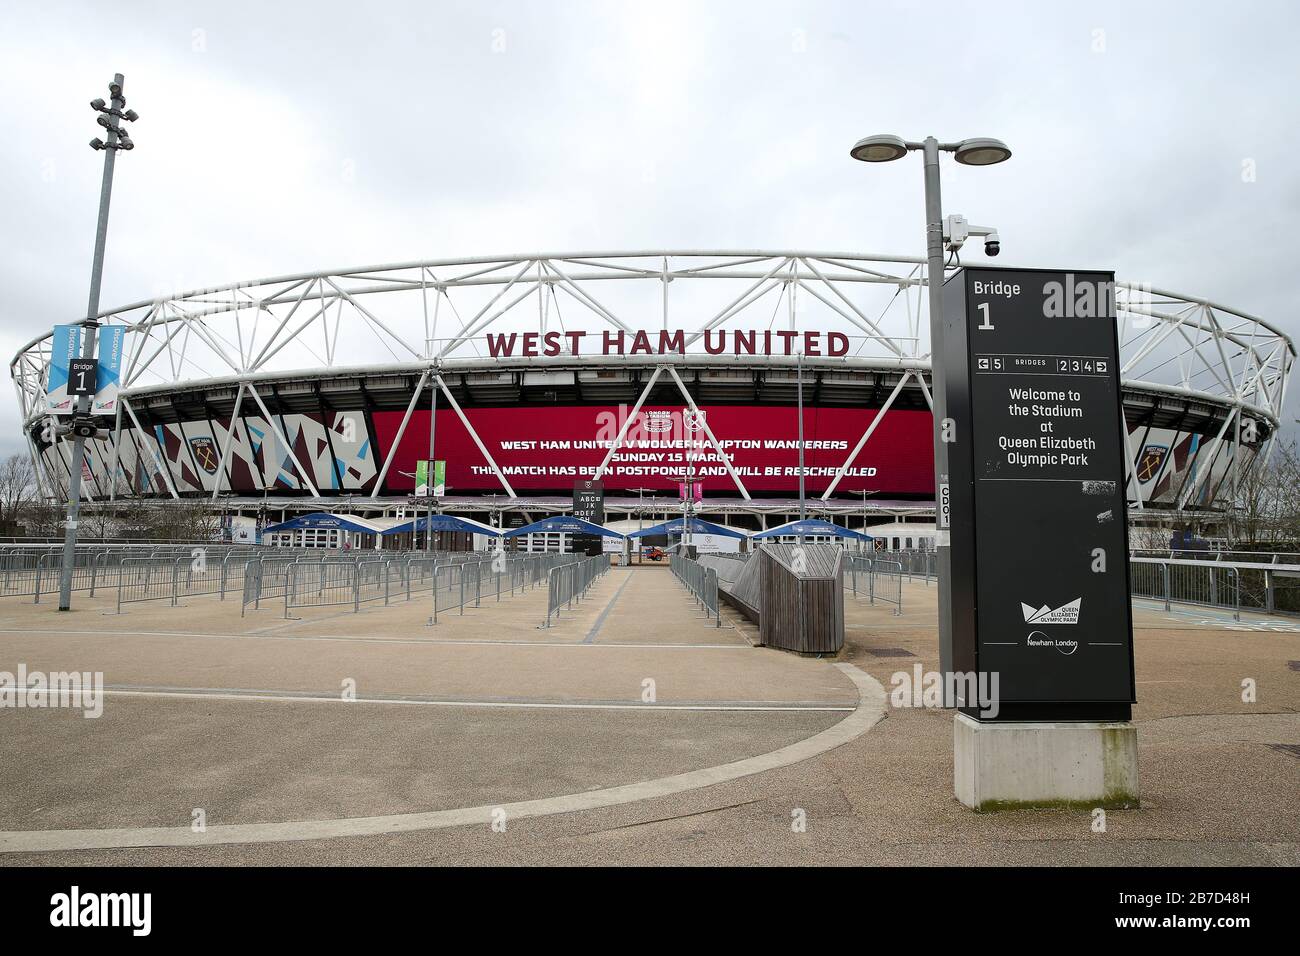 Vue d'un grand écran LED informant les fans du report à l'extérieur du stade de Londres, domicile du club de football West Ham United, suite à l'annonce de vendredi selon laquelle la Premier League a suspendu tous les matches jusqu'au samedi 4 avril 2020. Banque D'Images